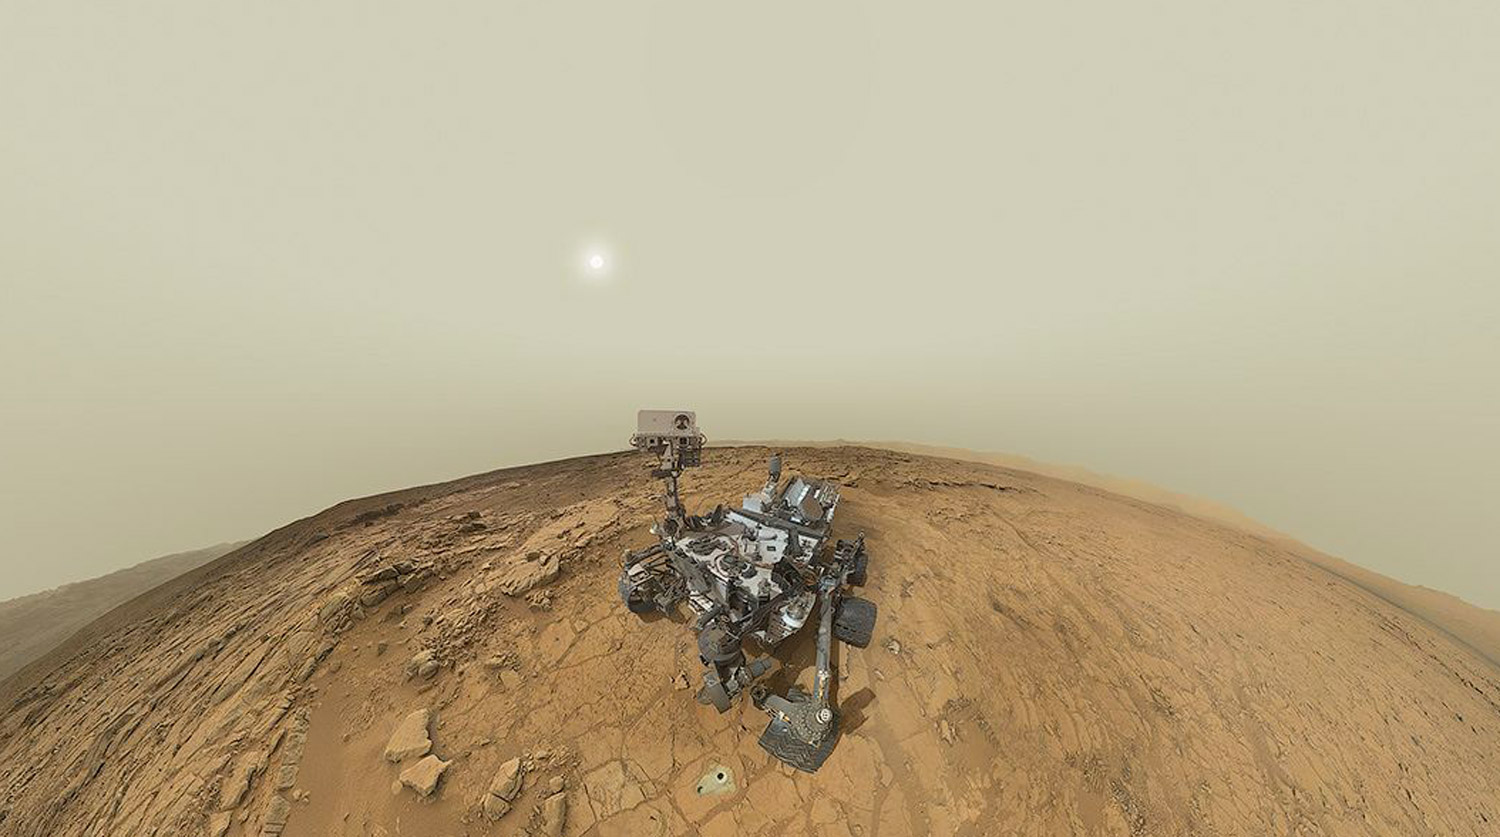 Марсоход Curiosity представляет собой автономную химическую лабораторию в несколько раз больше и тяжелее предыдущих марсоходов — Spirit и Opportunity